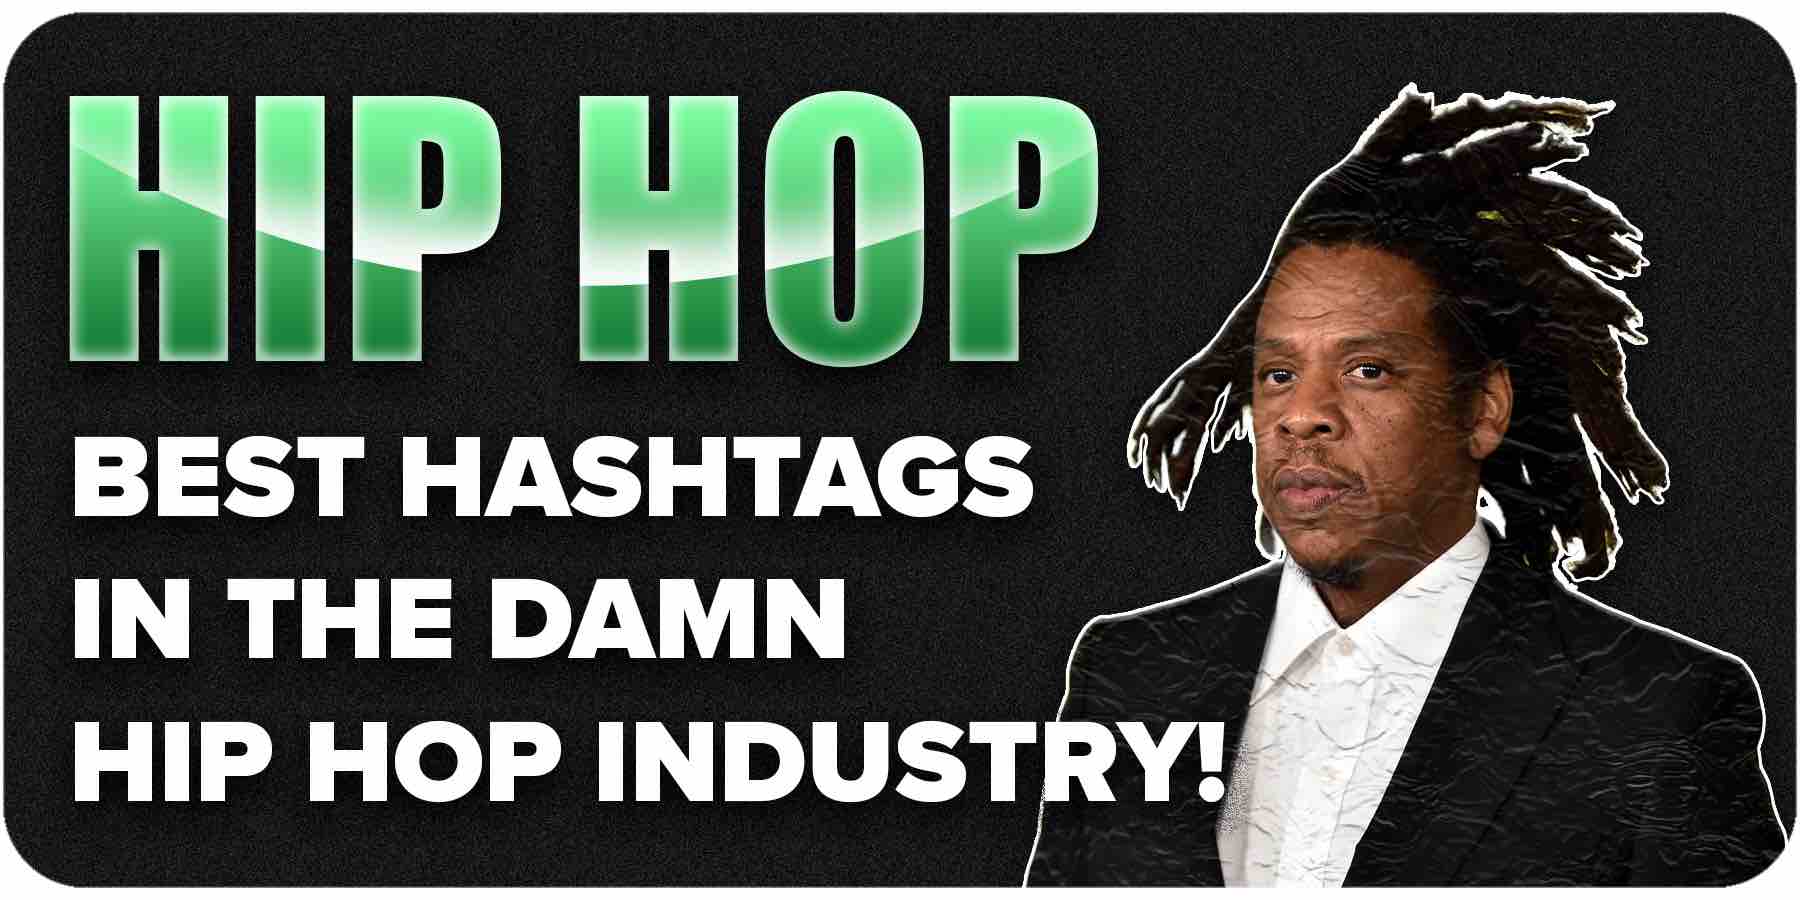 hiphop hashtags